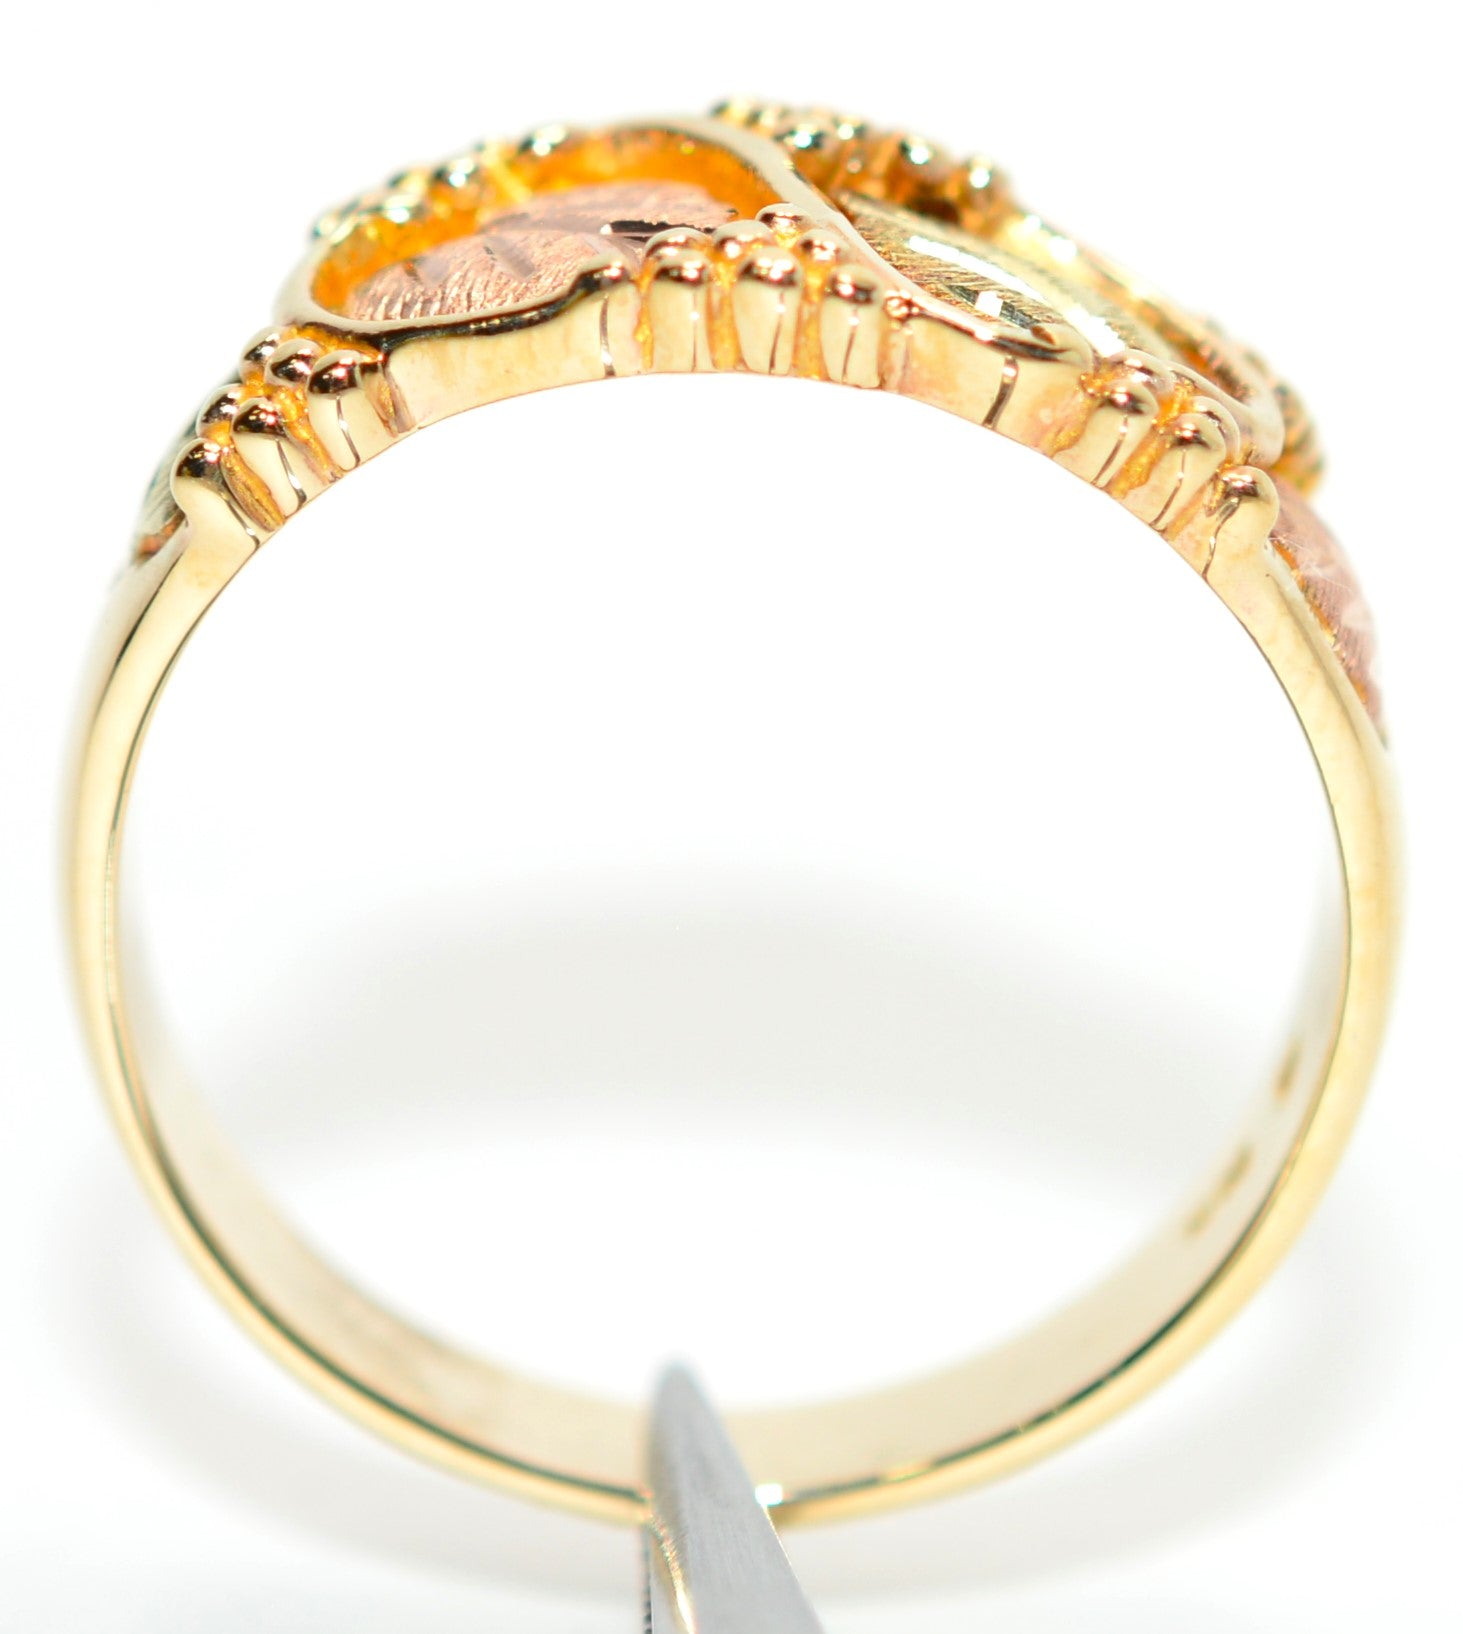 Black Hills Gold Ring 10K Solid Gold Men's Ring Leaf Ring Boho Ring Vine Ring Tri-Tone Gold Tri-Color Gold Vintage Estate Jewellery USA